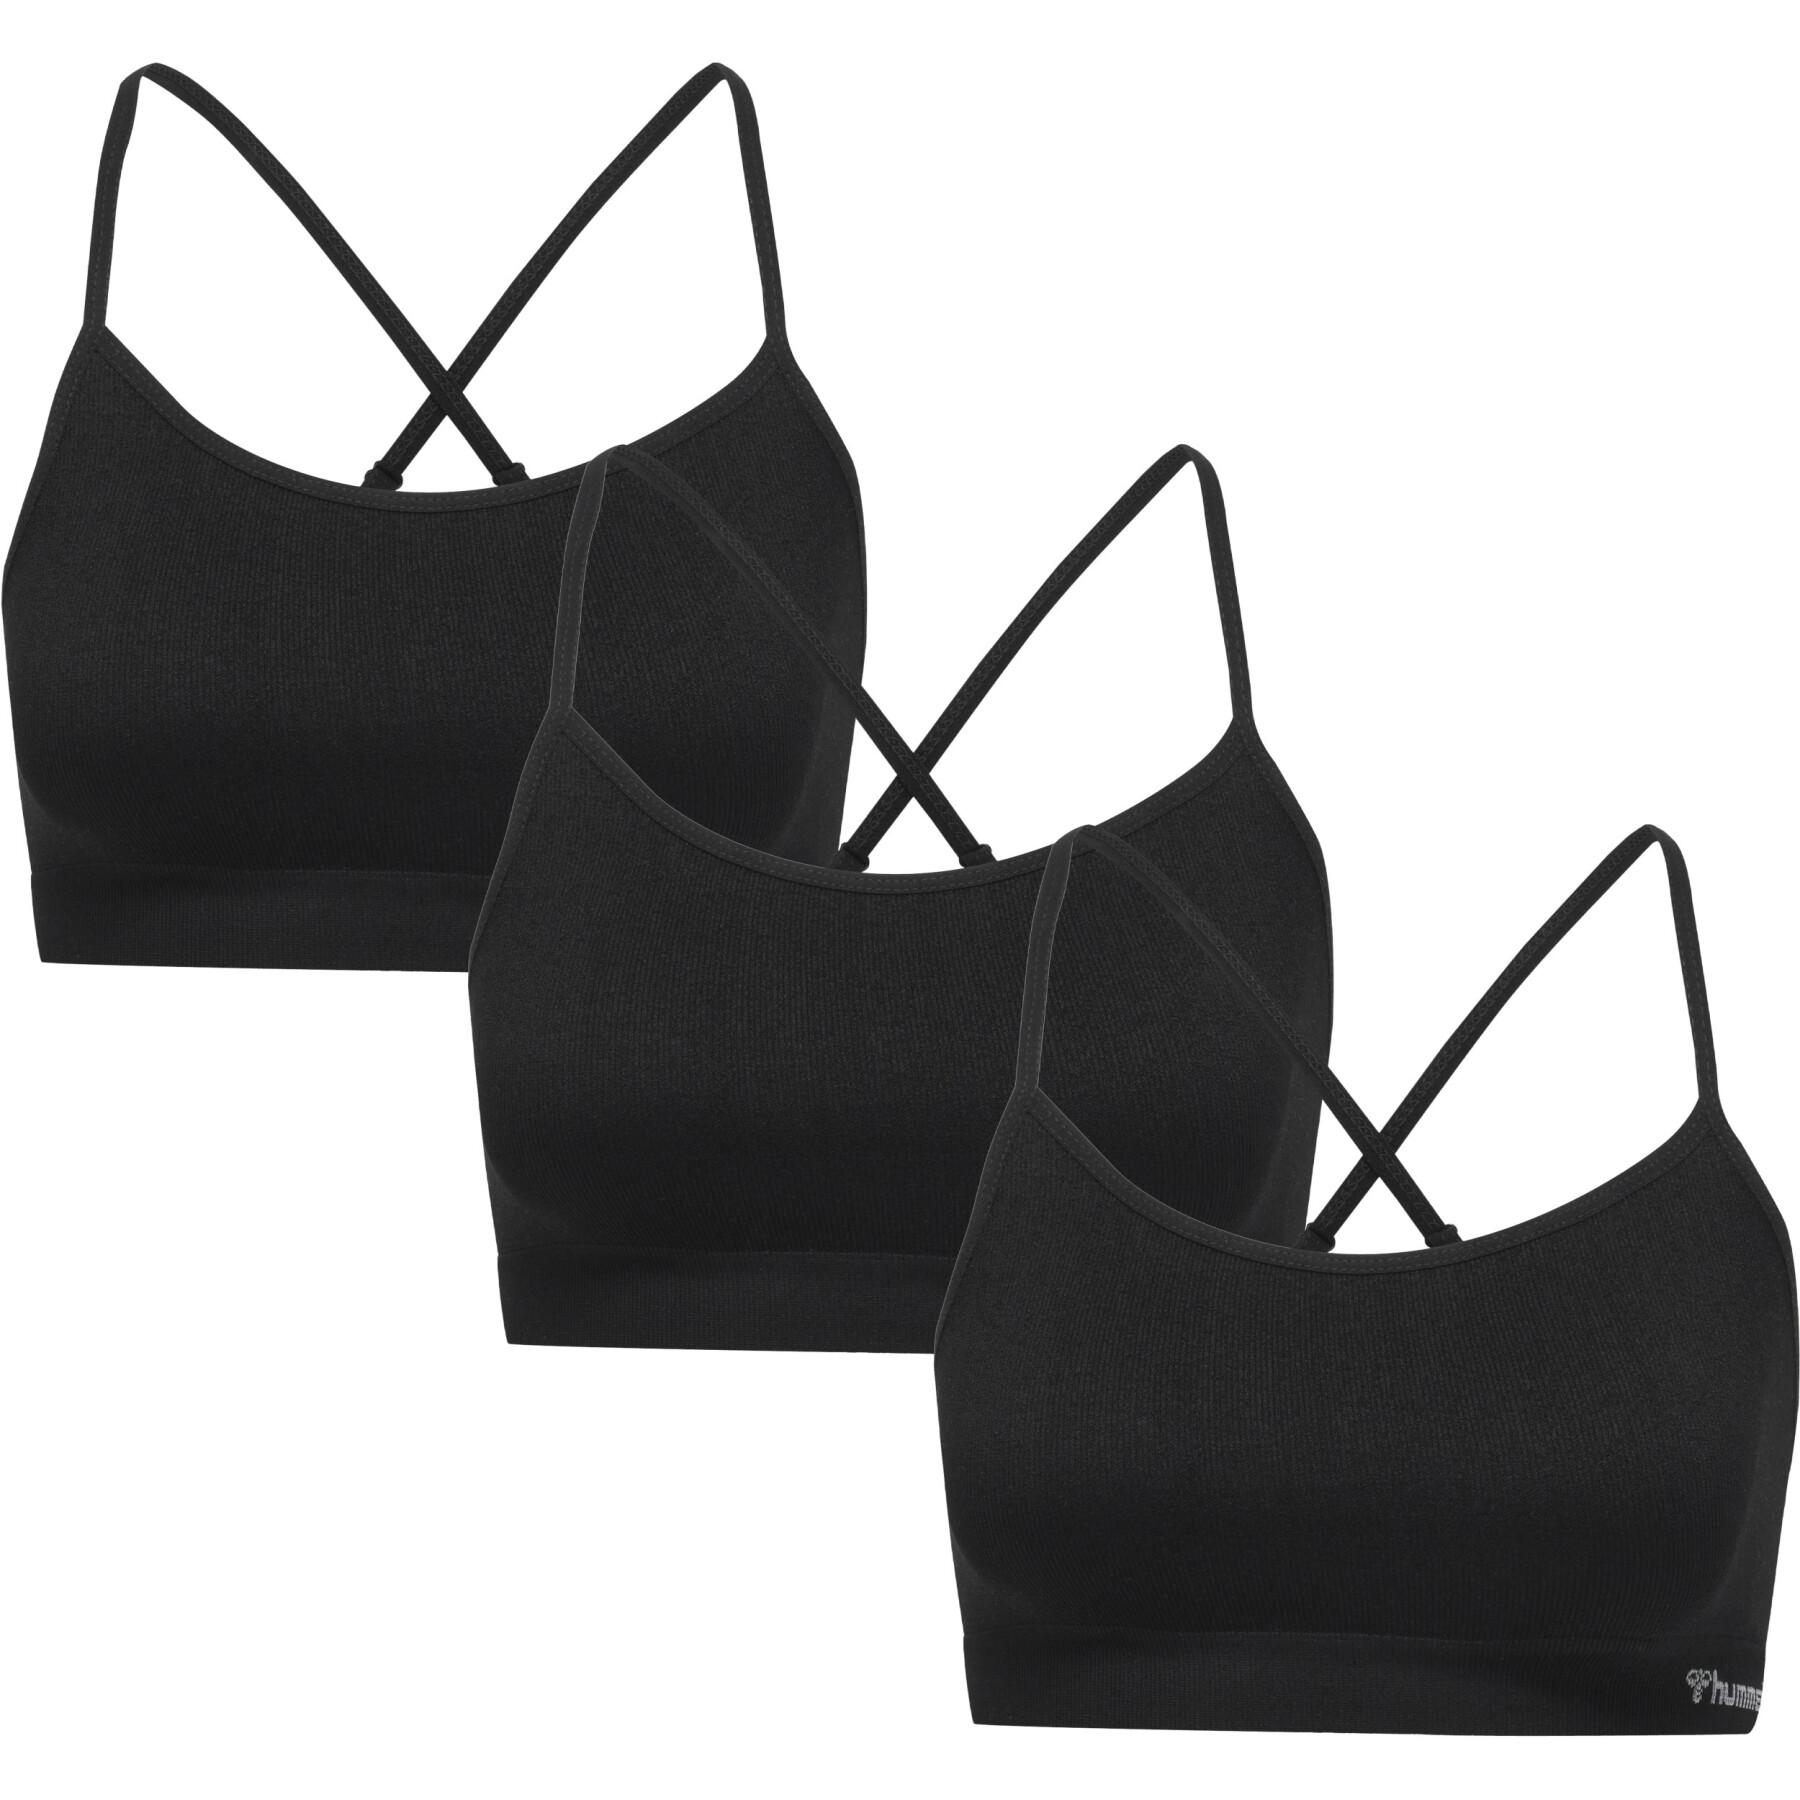 Set of 3 bras for women Hummel Juno - Hummel - Brands - Lifestyle